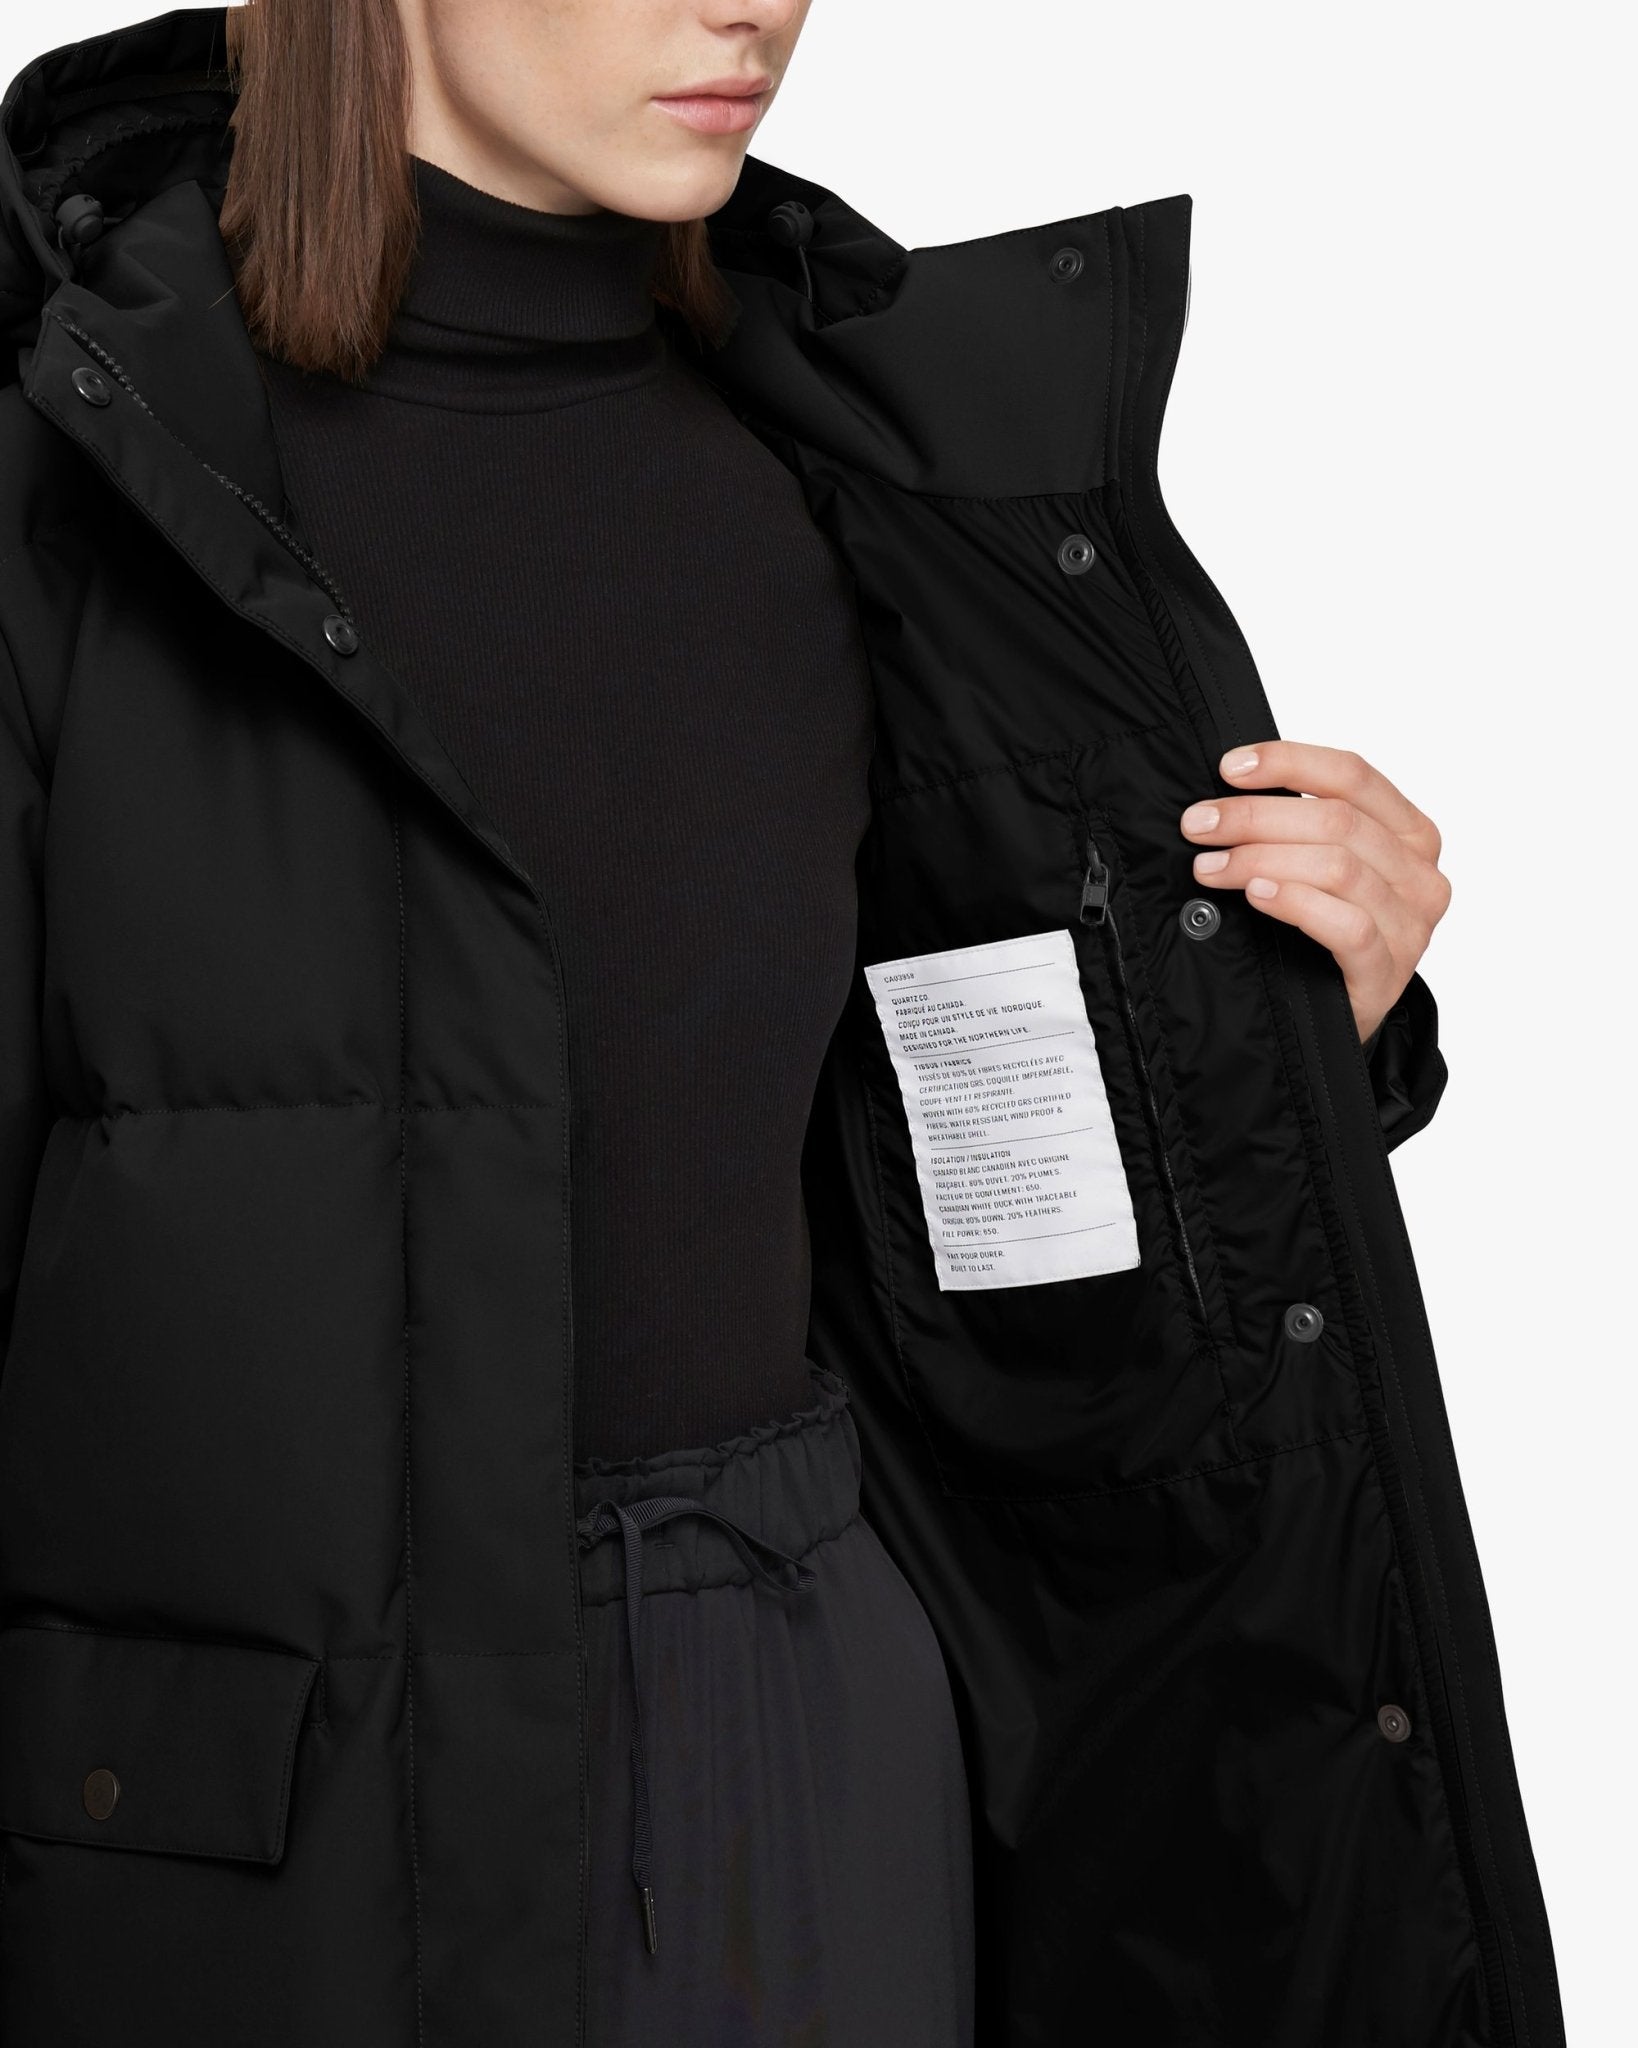 QUARTZ Co CHLOE 2.0 NF - Hooded Down Winter Jacket - FINAL SALE - Boutique Bubbles